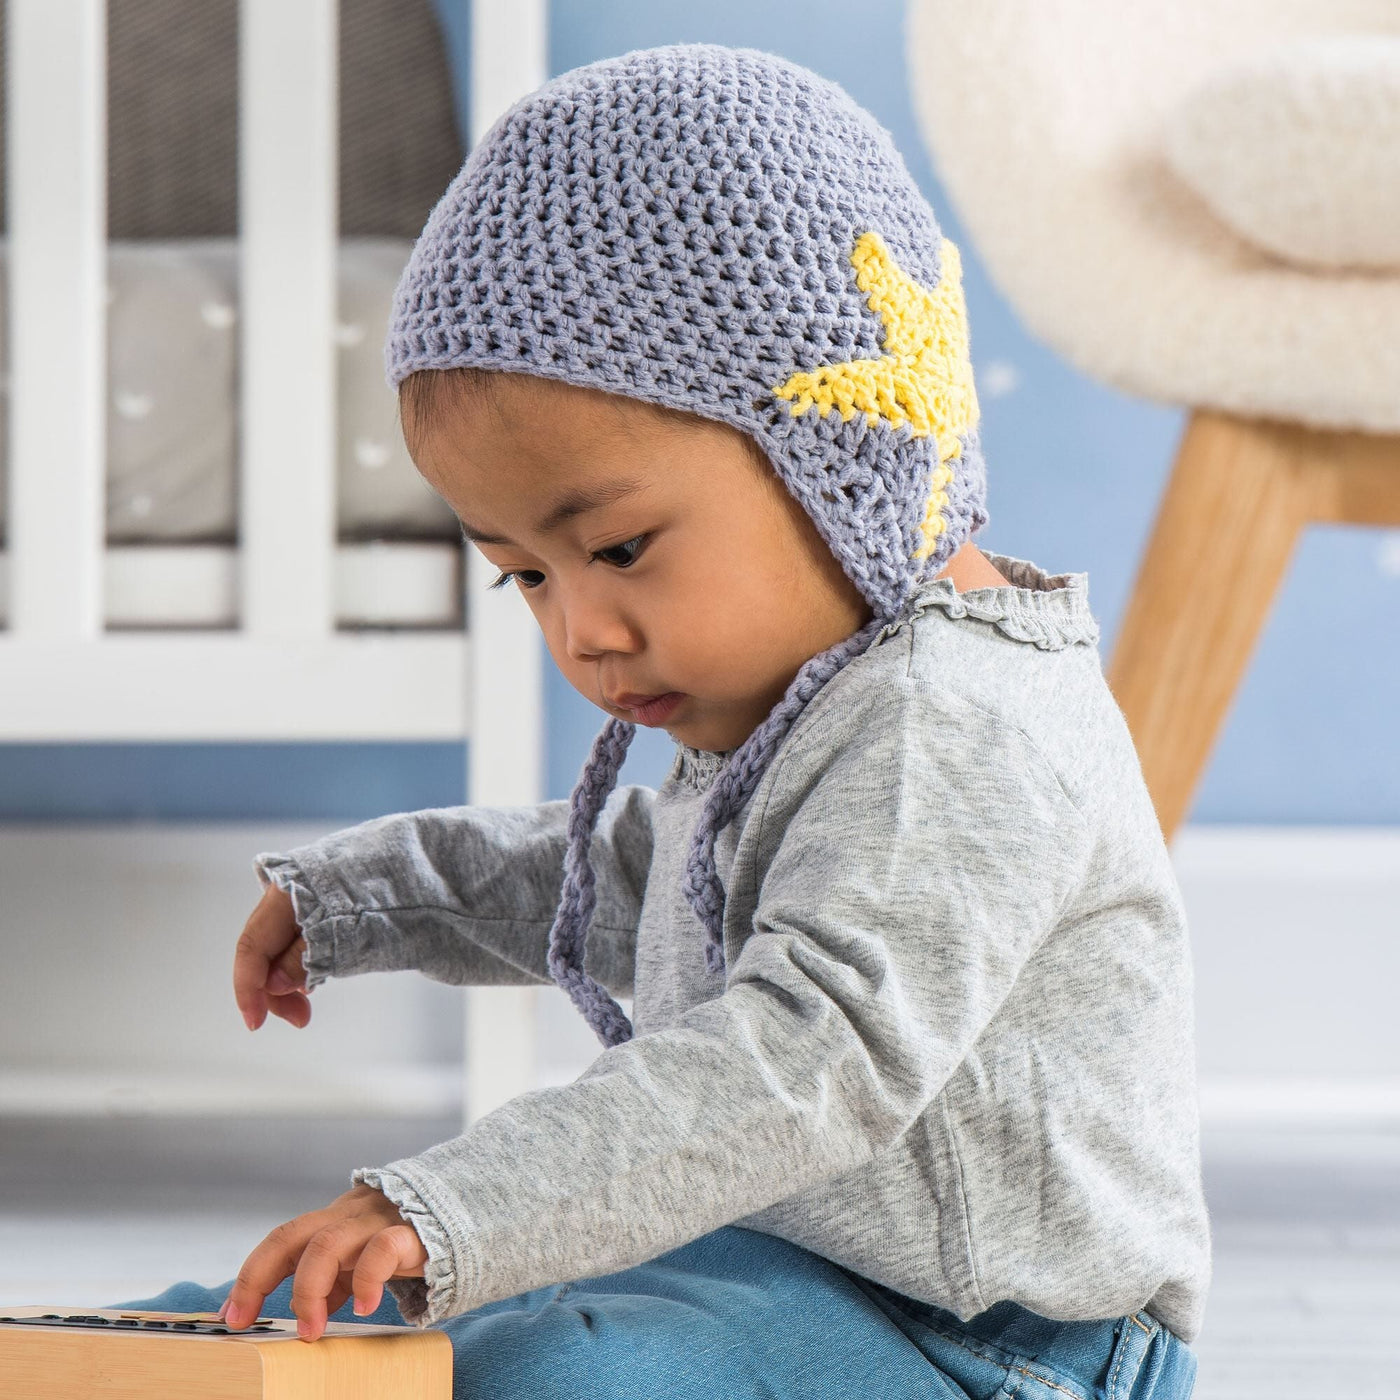 CROCHET PATTERN DOWNLOAD - Bernat Crochet Star Baby Earflap Hat